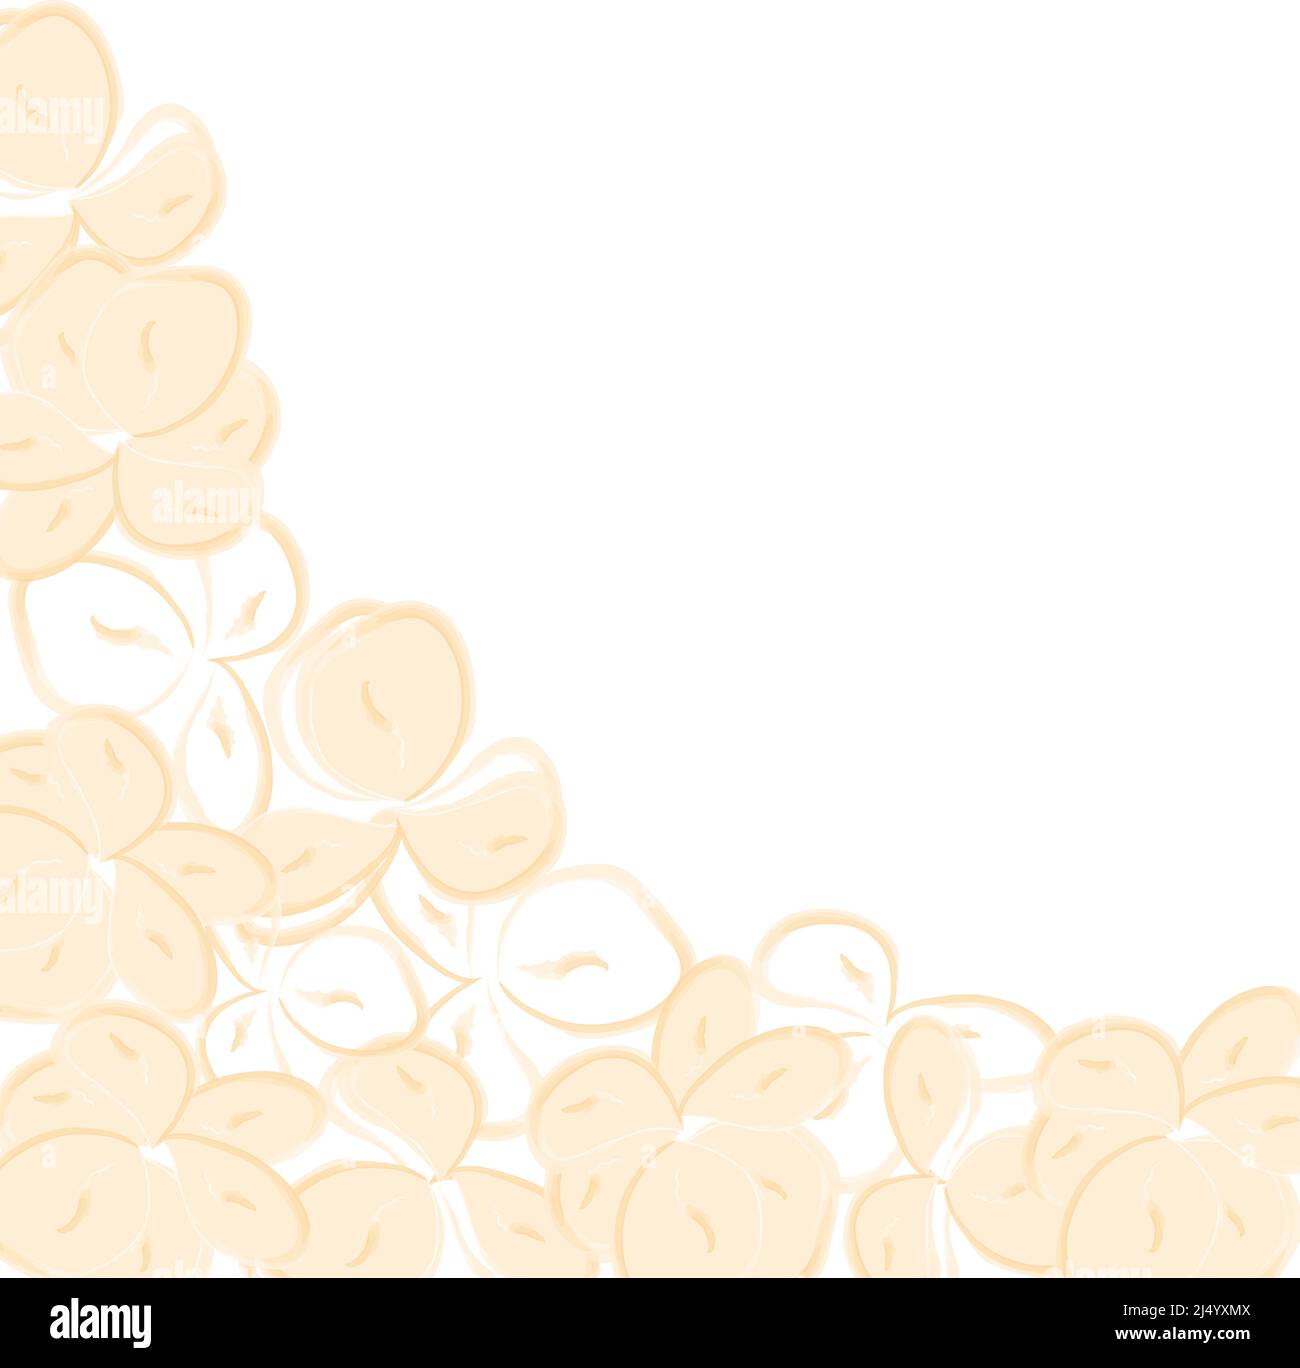 Eckrahmen-Schablone aus blasser Sandblume im Aquarell-Stil. Ideal für Grußkarten und Hochzeitseinladungen, Poster, Banner, Flyer, Herzlichen Glückwunsch. Vektorgrafik. Stock Vektor